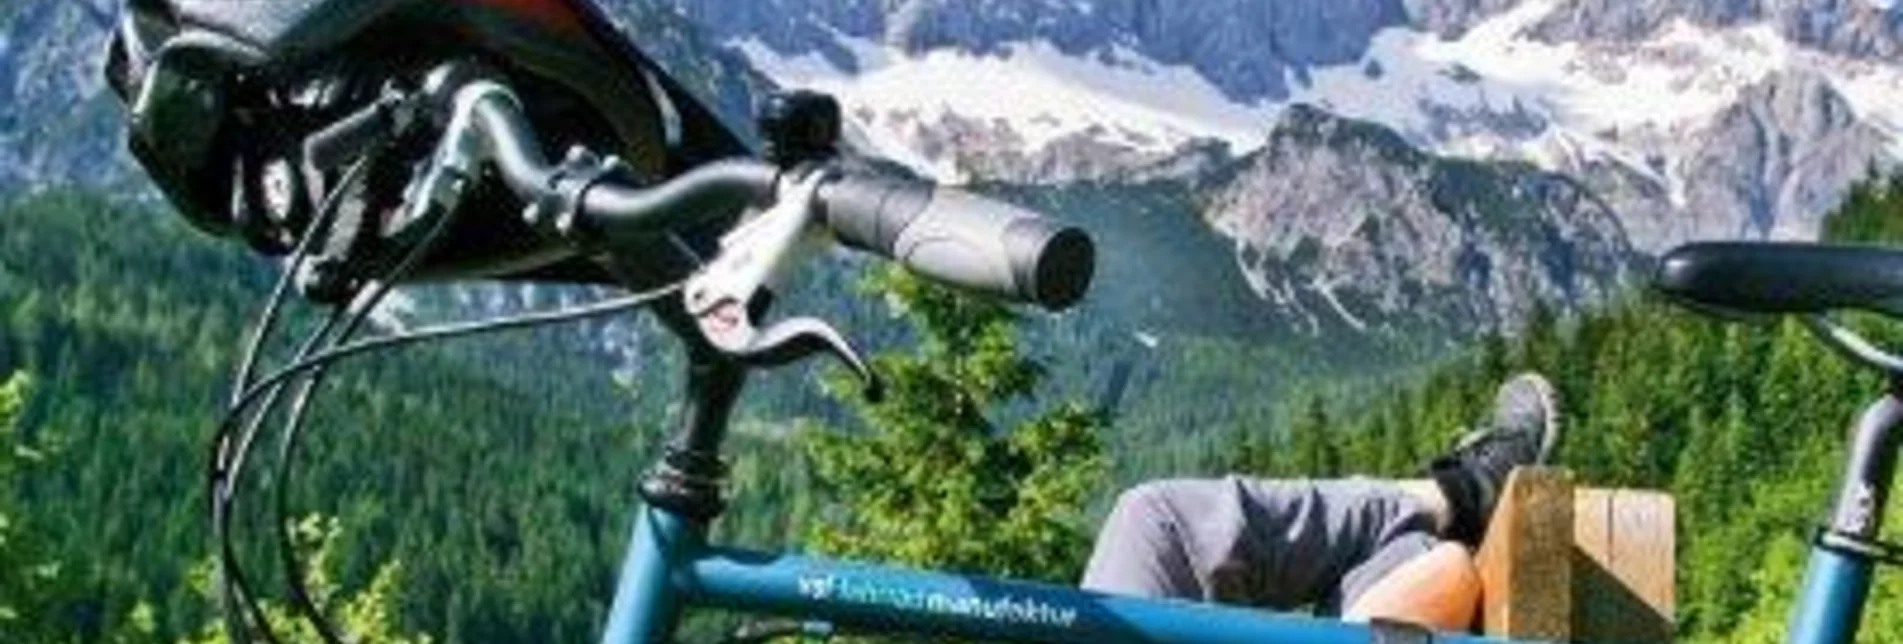 Bike Riding Ennsradweg - Through the world of mountains and water - Touren-Impression #1 | © Erlebnisregion Schladming-Dachstein